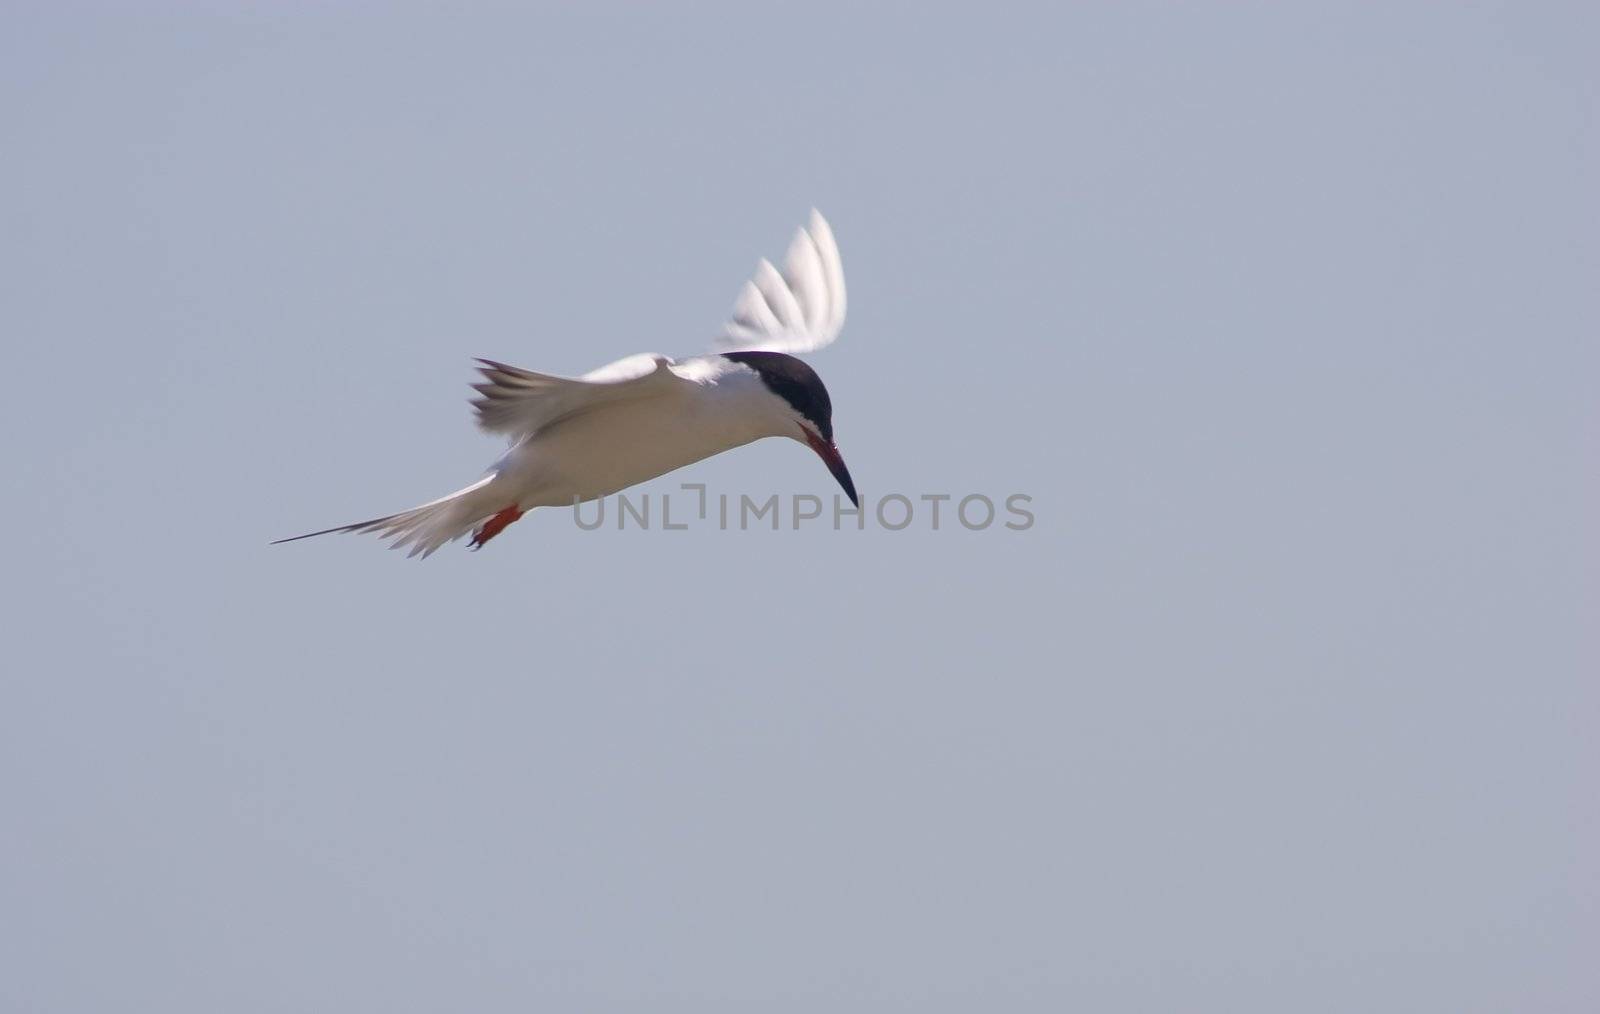 Little tern by melastmohican